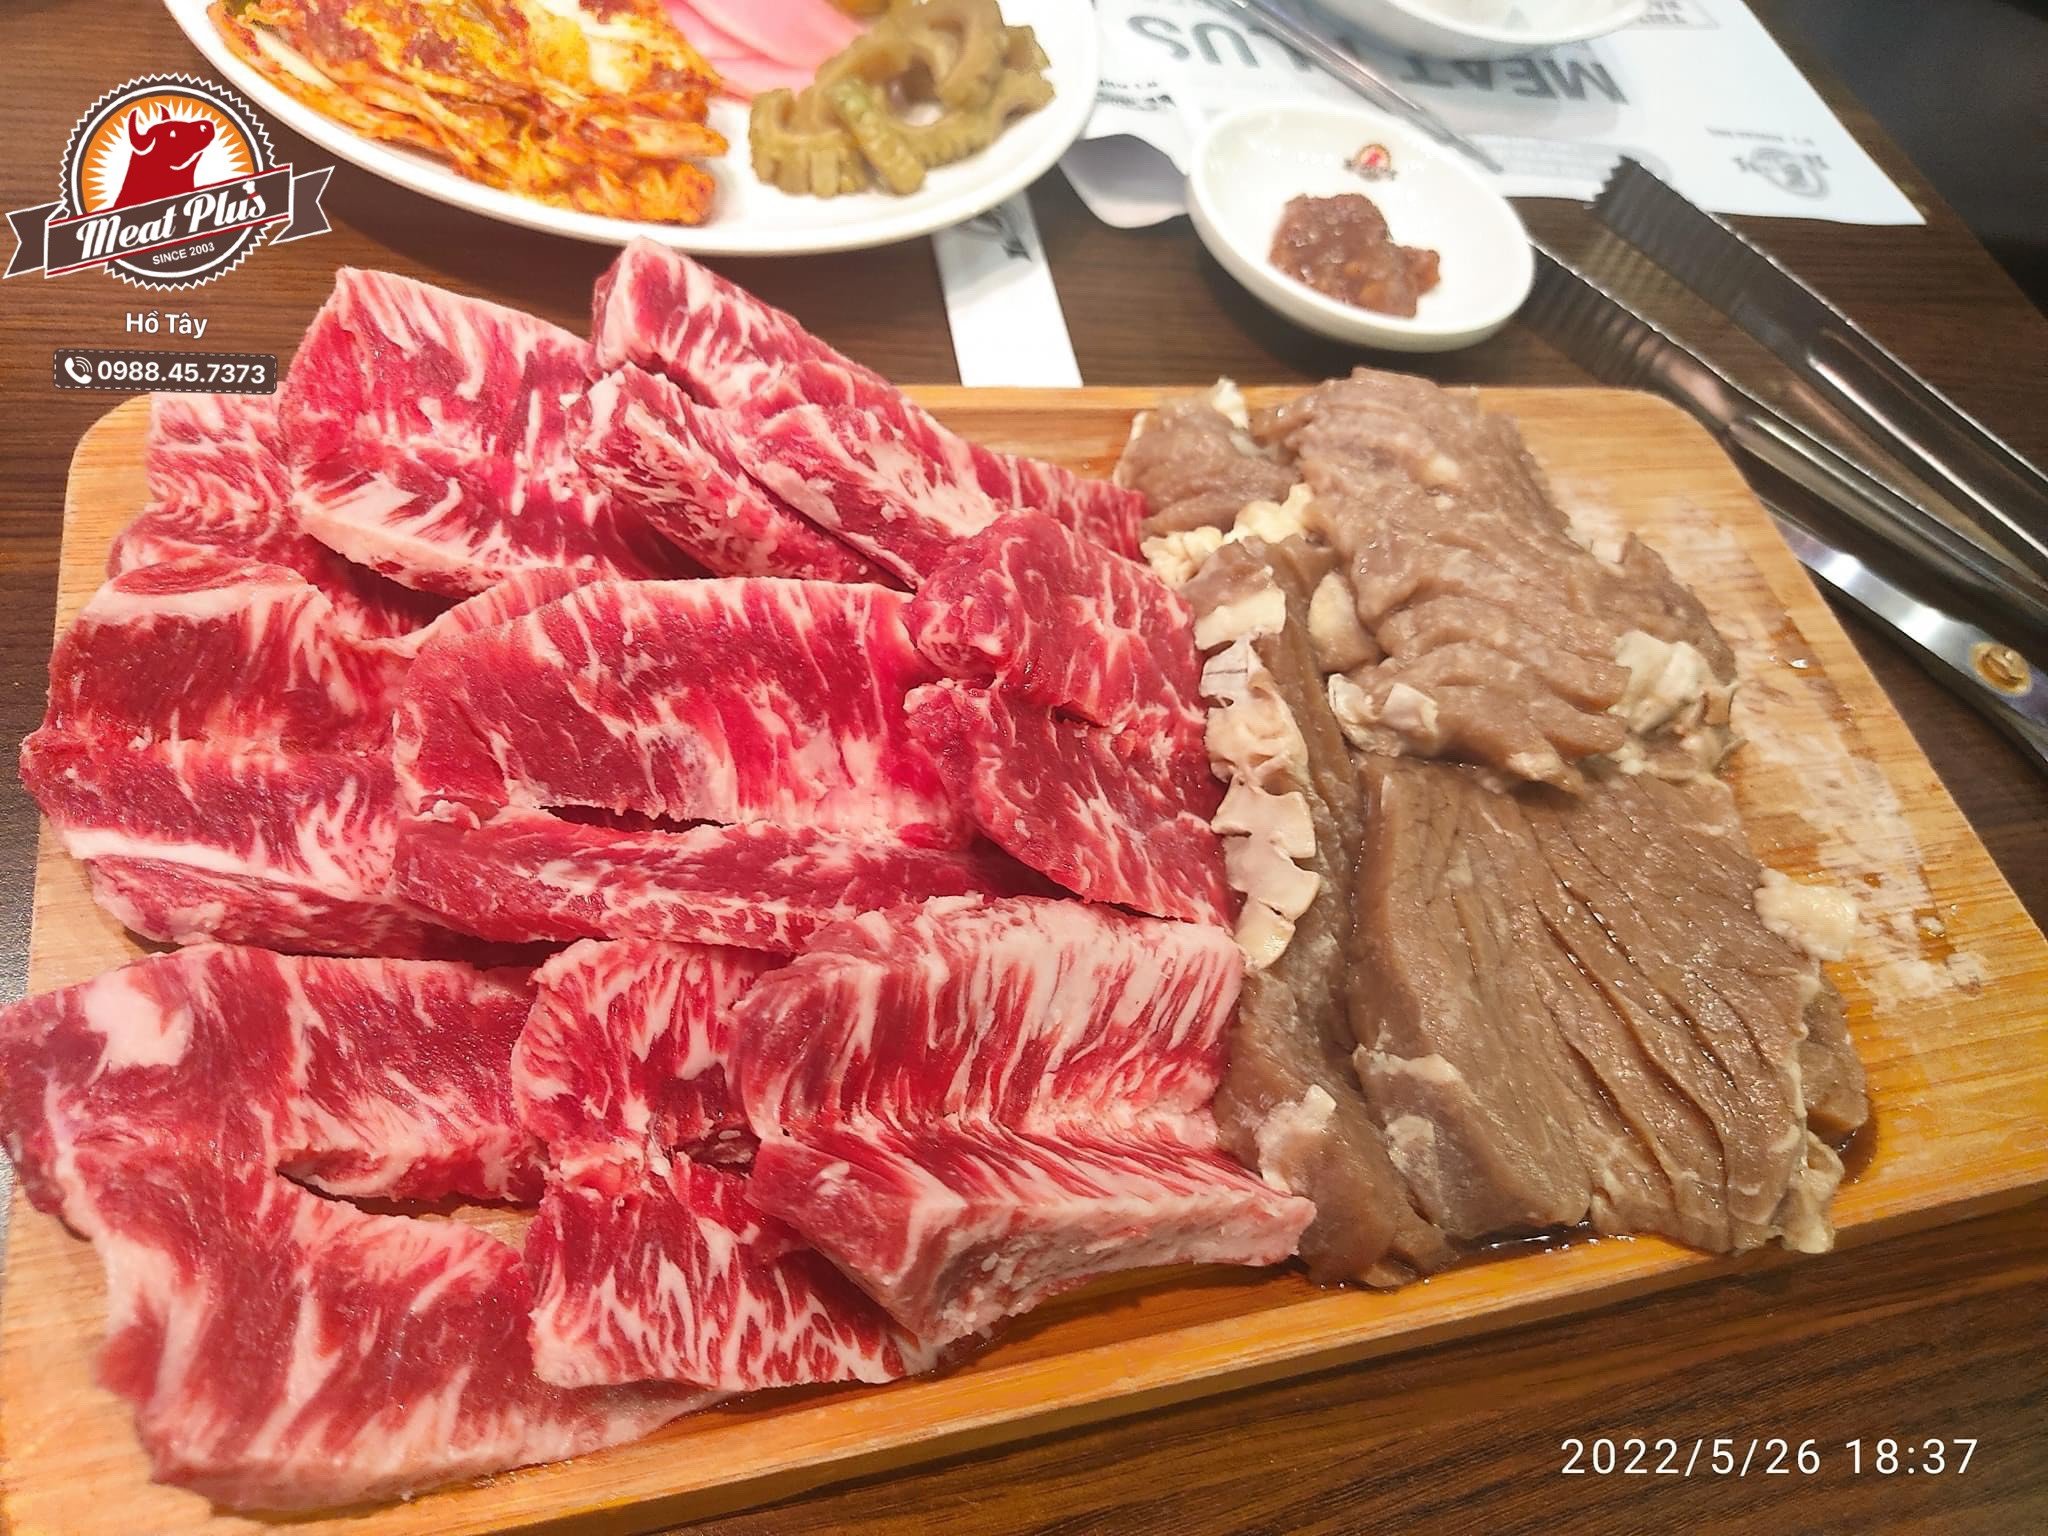 Thịt nướng chuẩn Hàn - Meat Plus Hồ Tây